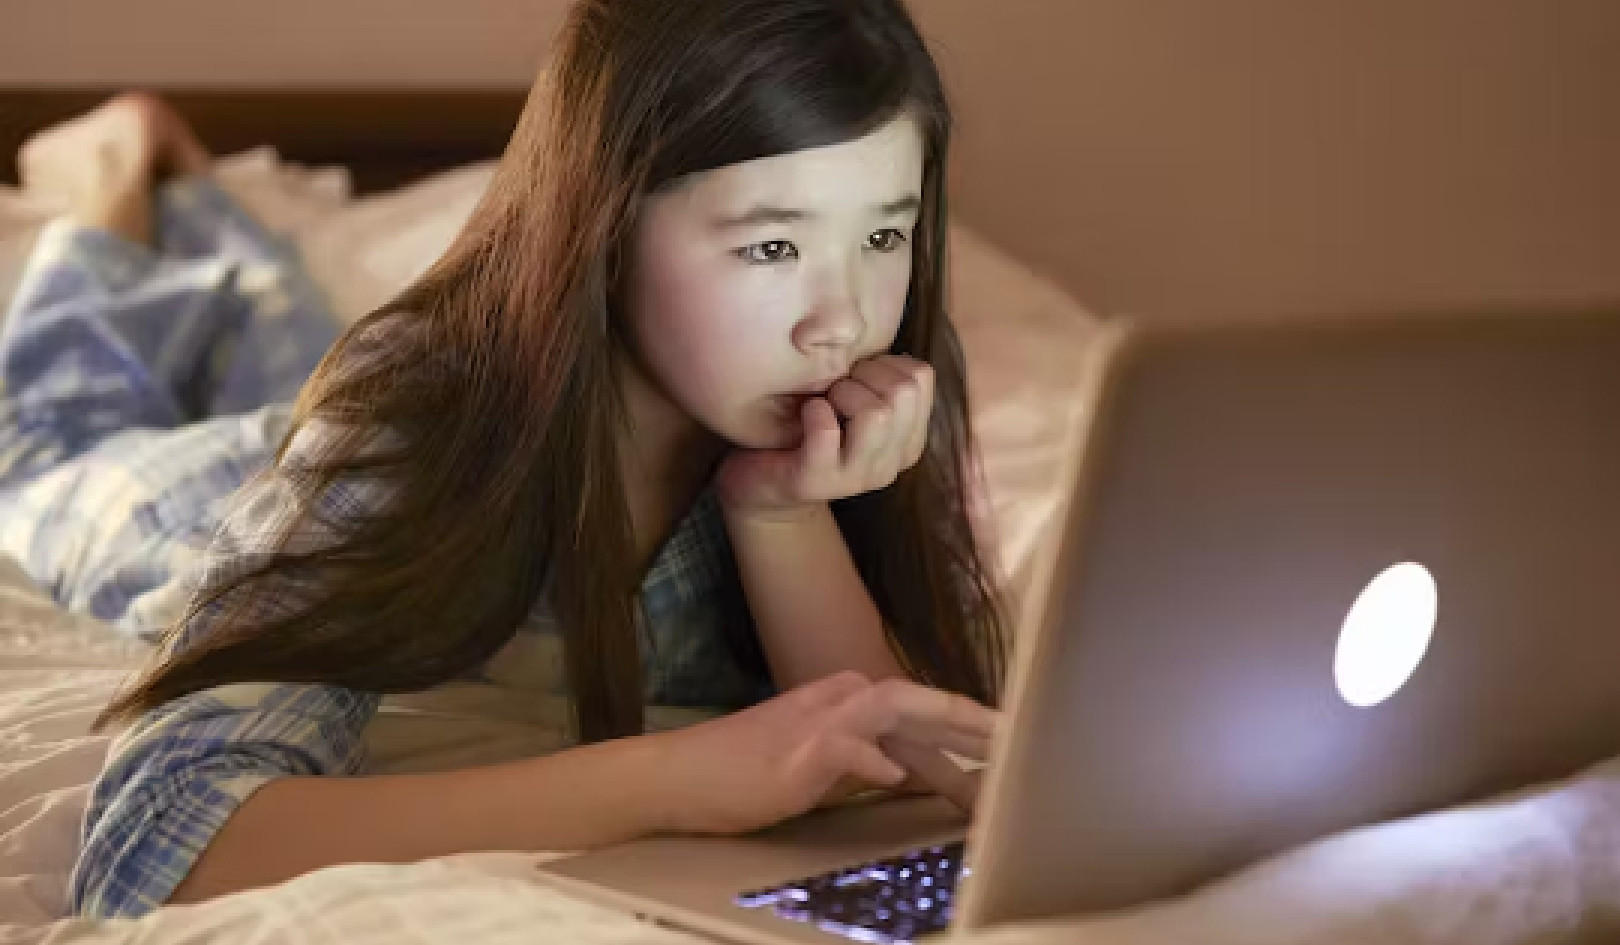 Les webcams pour enfants sont ciblées par des prédateurs en ligne